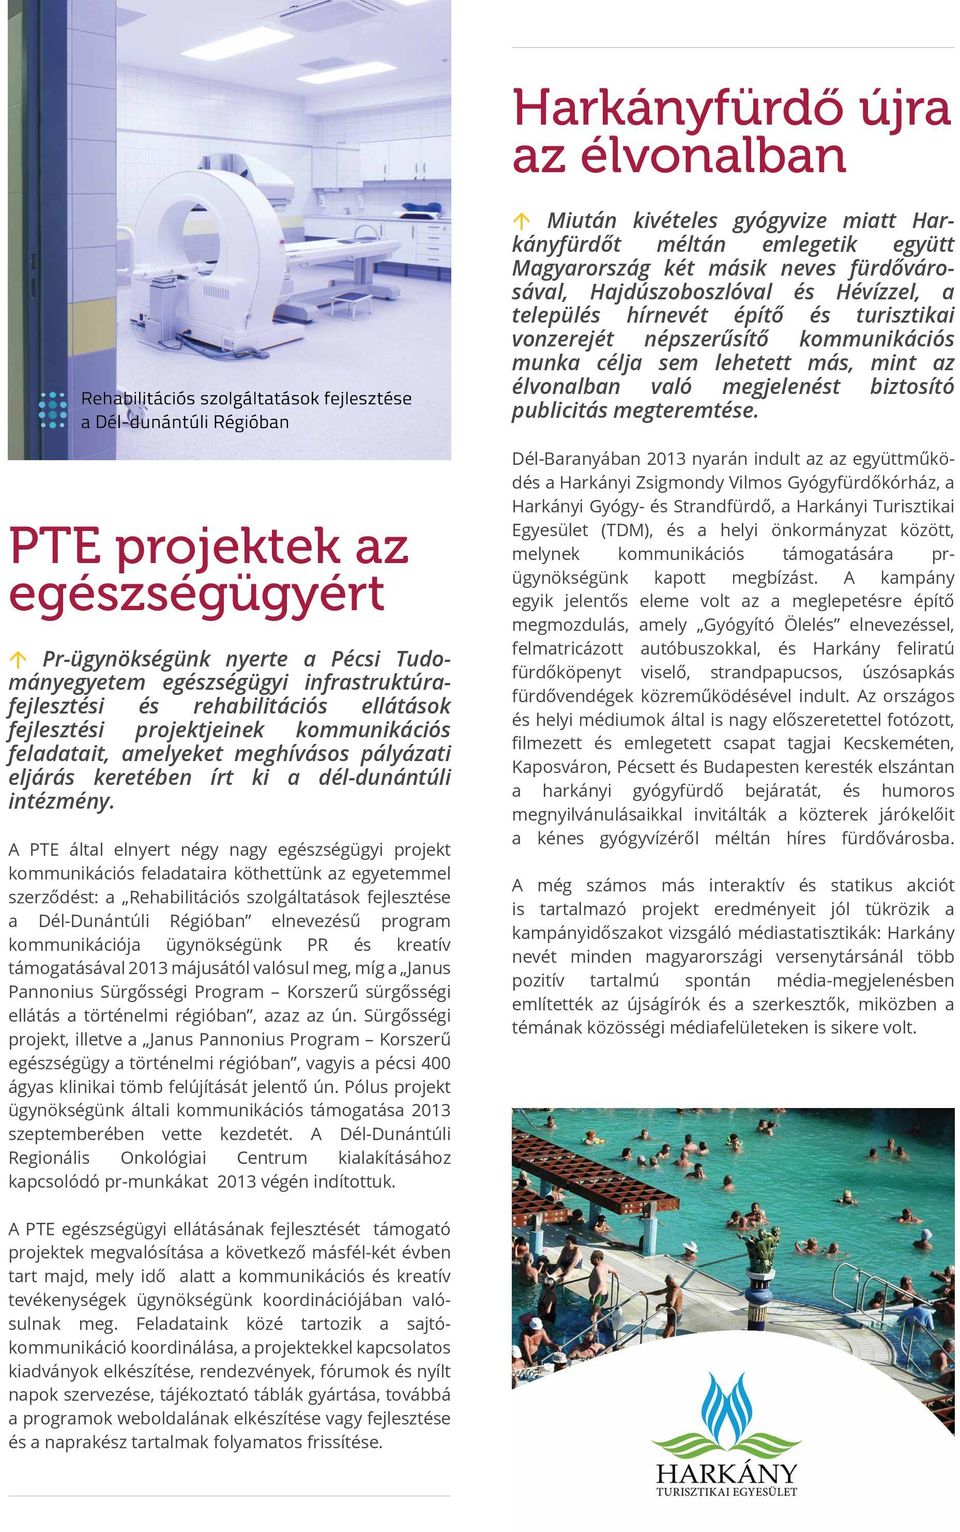 PTE projektek az egészségügyért á Pr-ügynökségünk nyerte a Pécsi Tudományegyetem egészségügyi infrastruktúrafejlesztési és rehabilitációs ellátások fejlesztési projektjeinek kommunikációs feladatait,